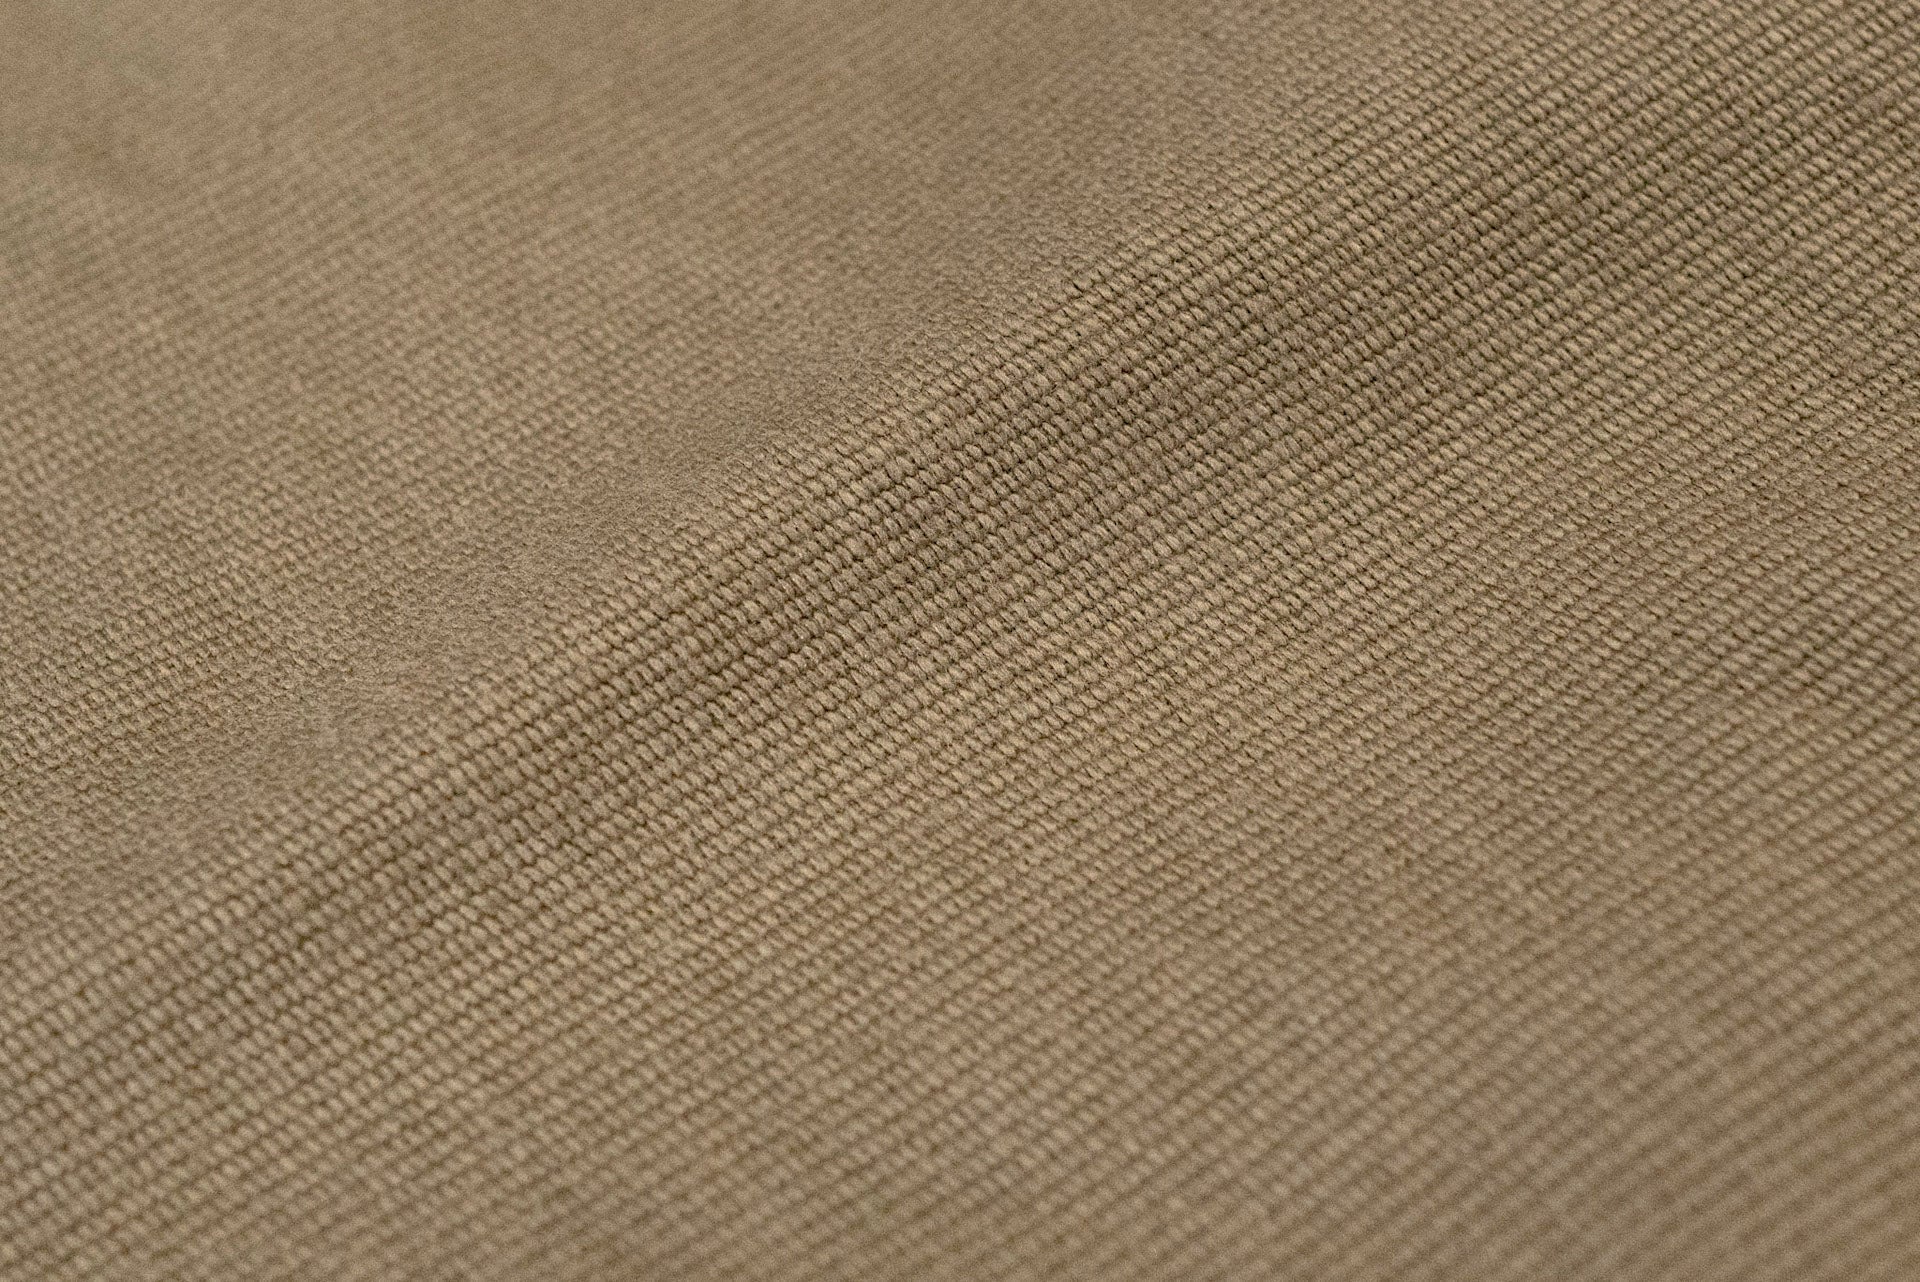 Freewheelers Deck Cord Cloth "Military Utility Trousers" (Khaki Beige)